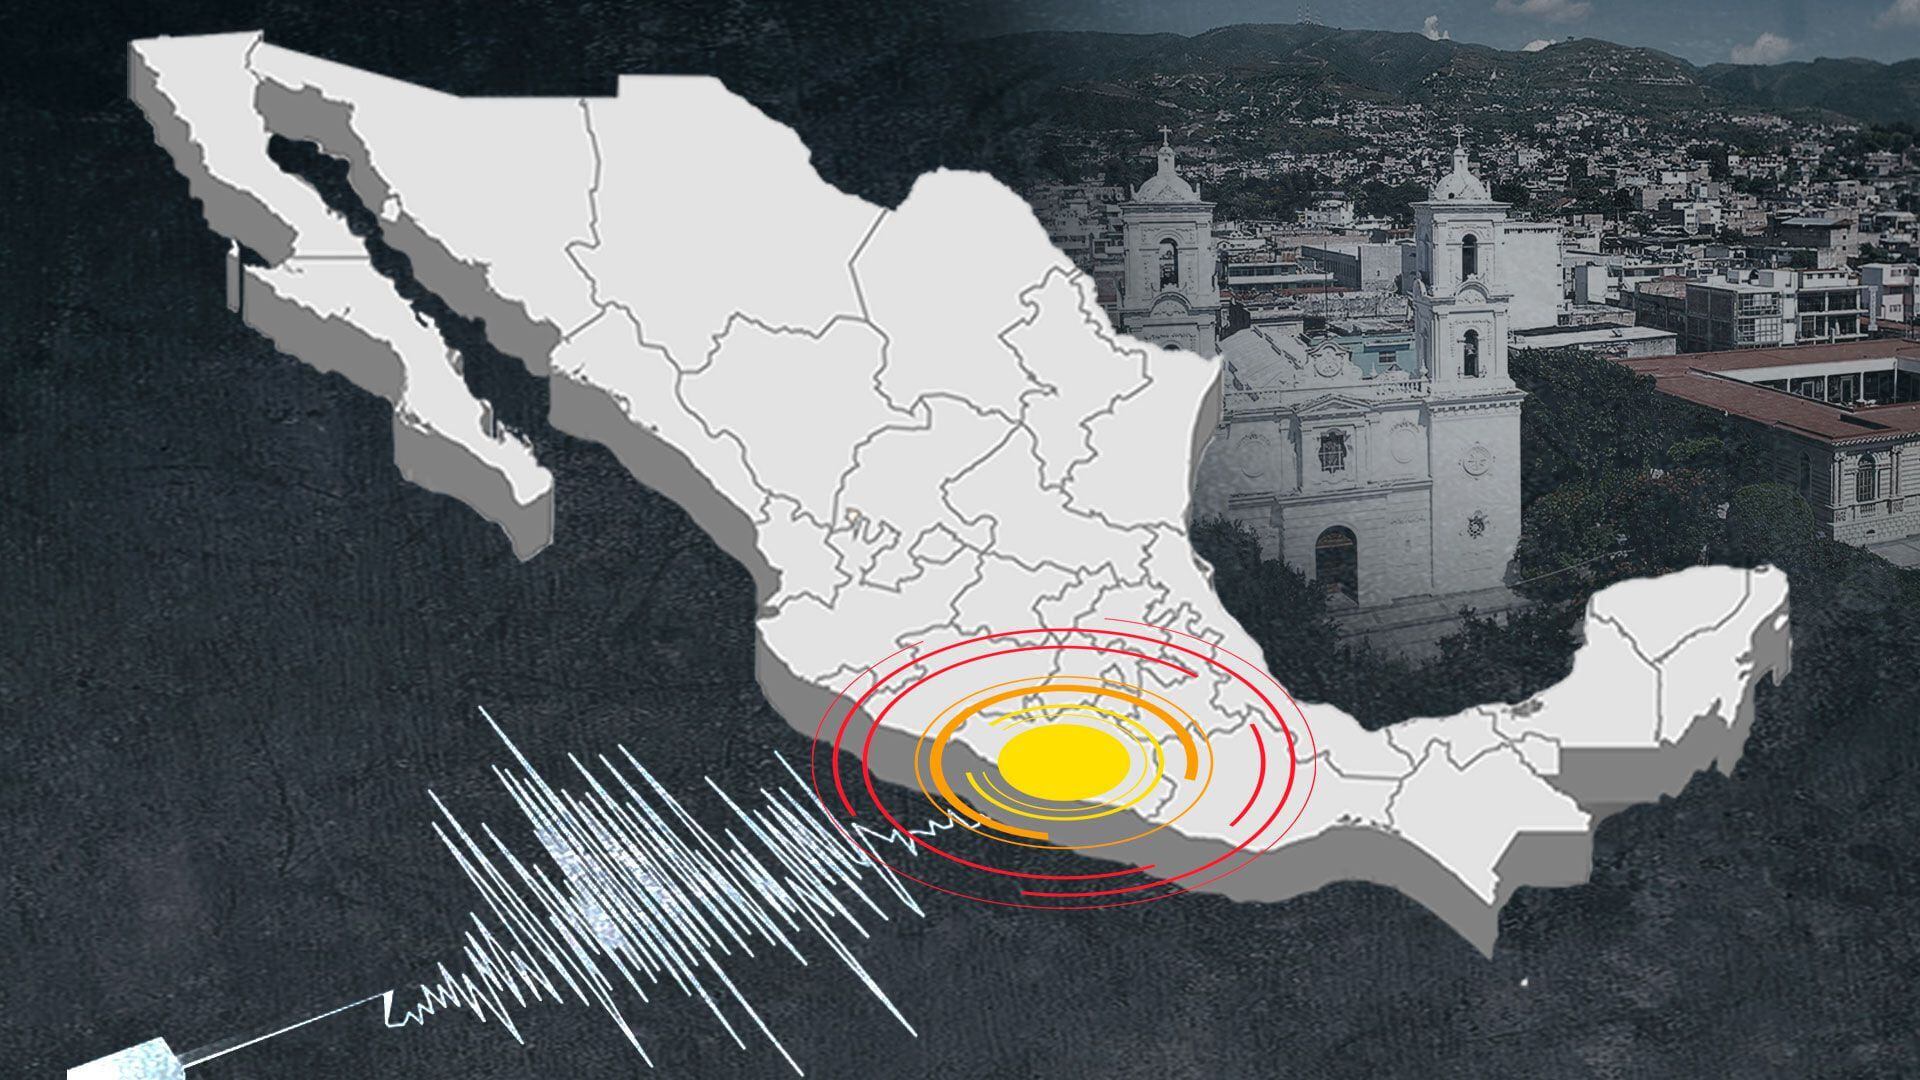 La información preliminar señala que el temblor tuvo epicentro en Huixtla. (Infobae)